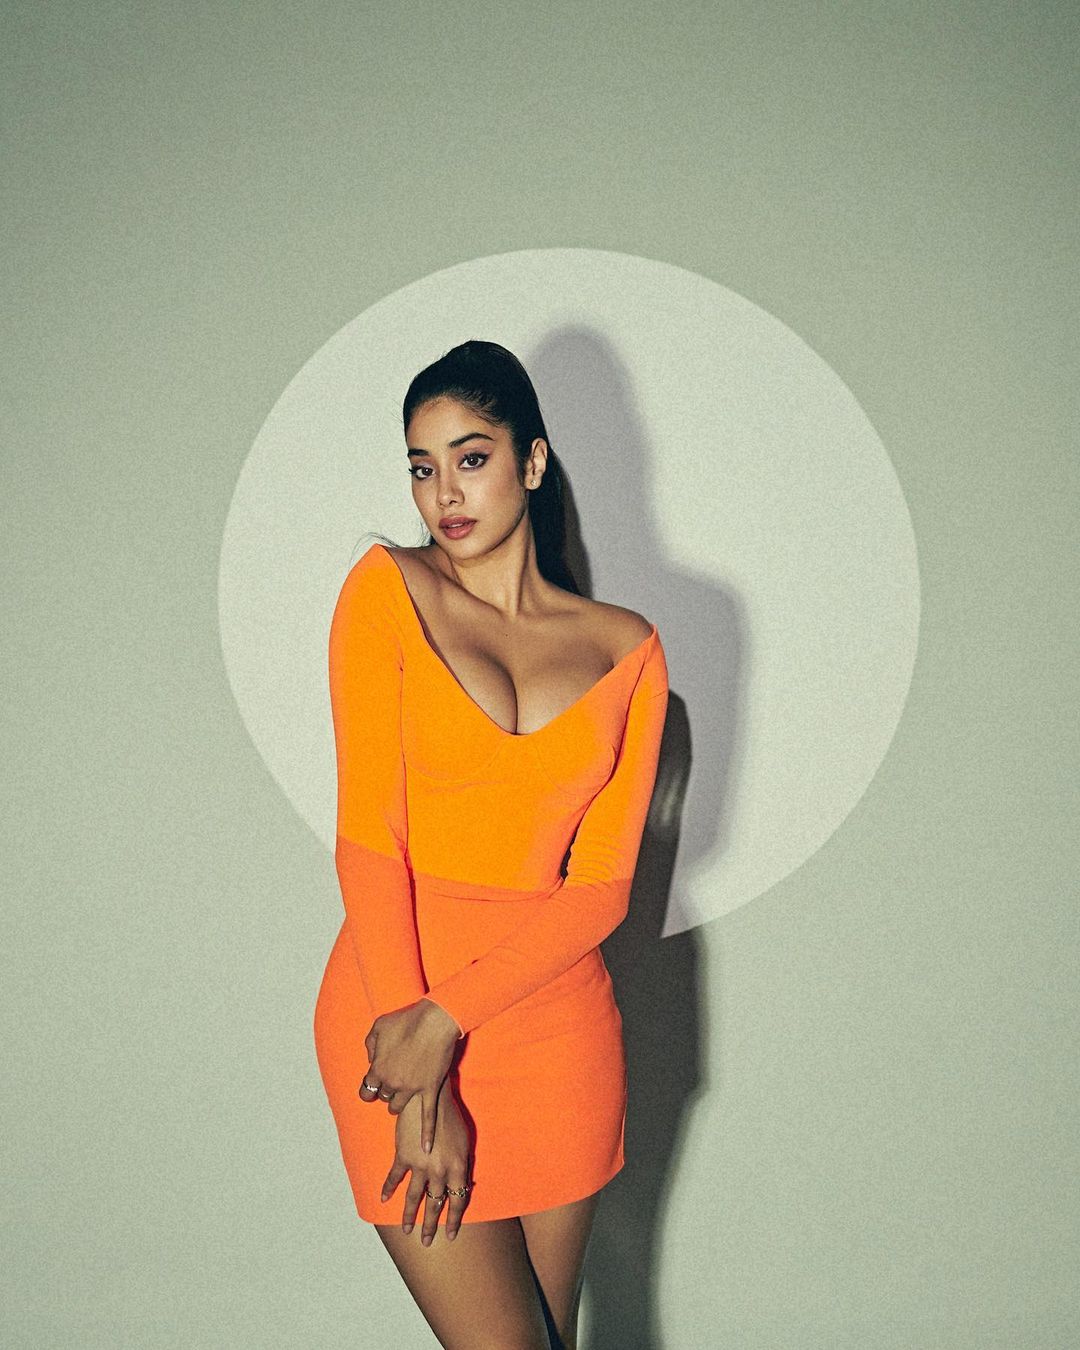 Janhvi Kapoor is raising temperature in a tangerine dress with plunging neckline.